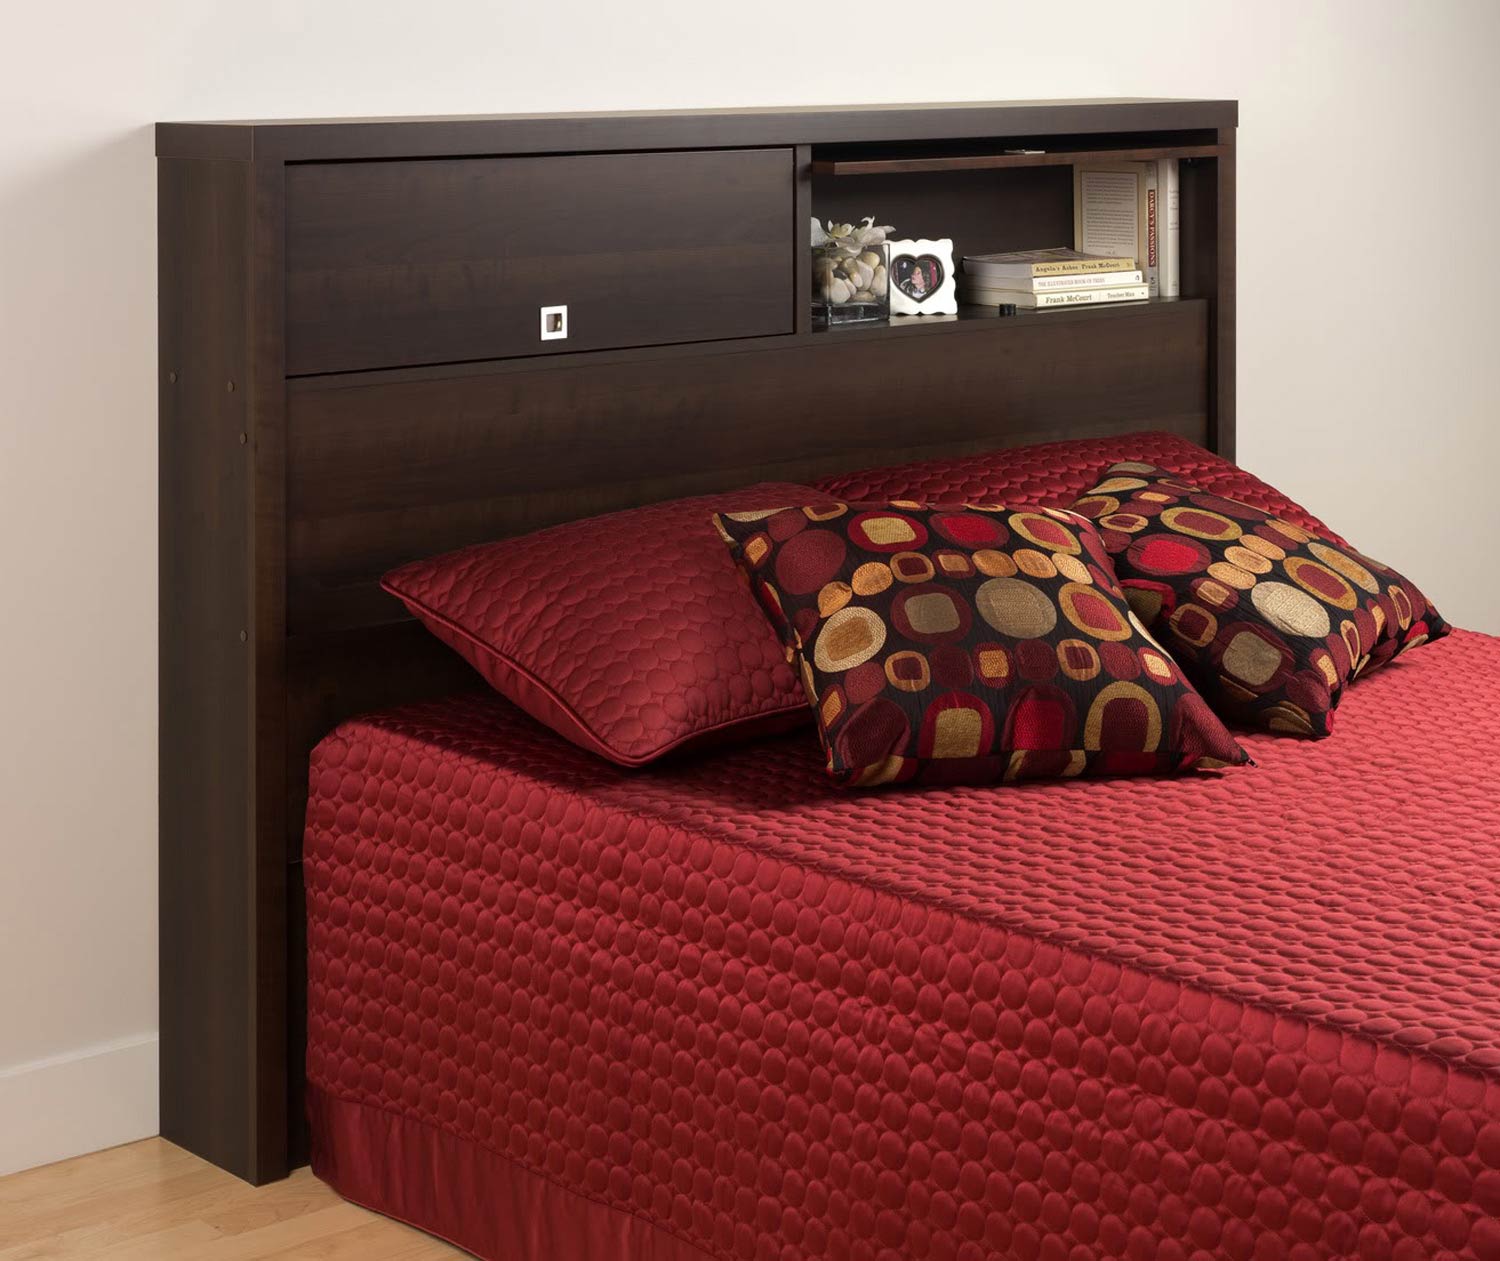 двуспальная кровать с ящиками в изголовье для белья и полочкой